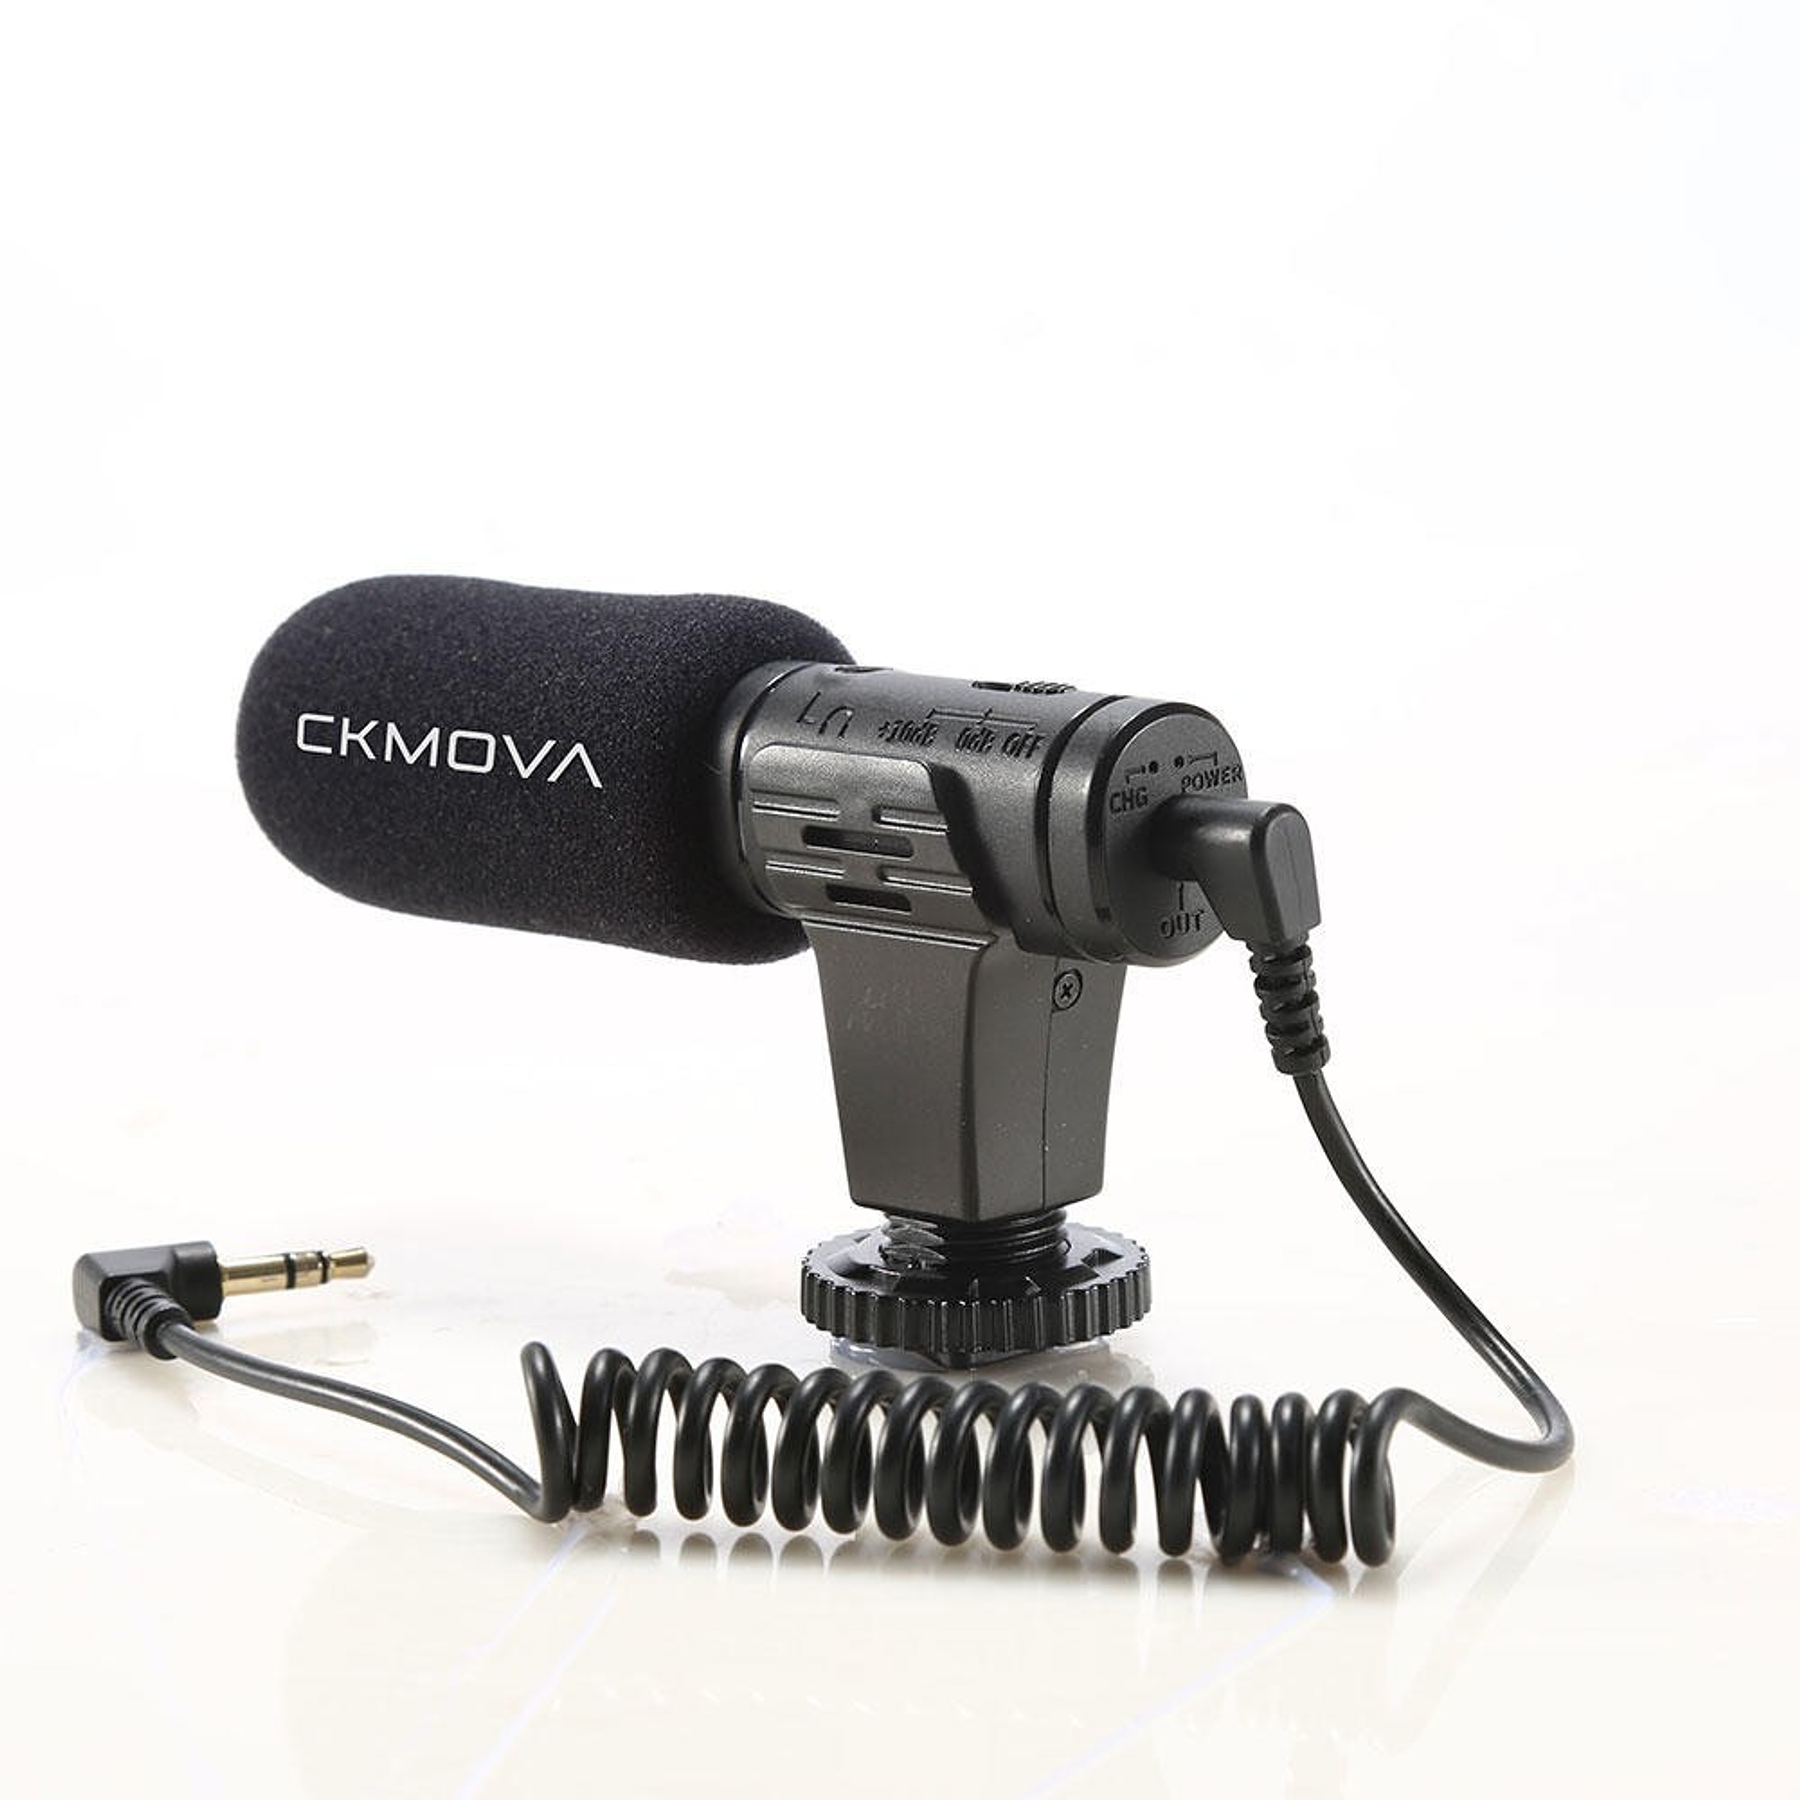 Microfono Ckmova de Condensador para Camaras y Smartphone